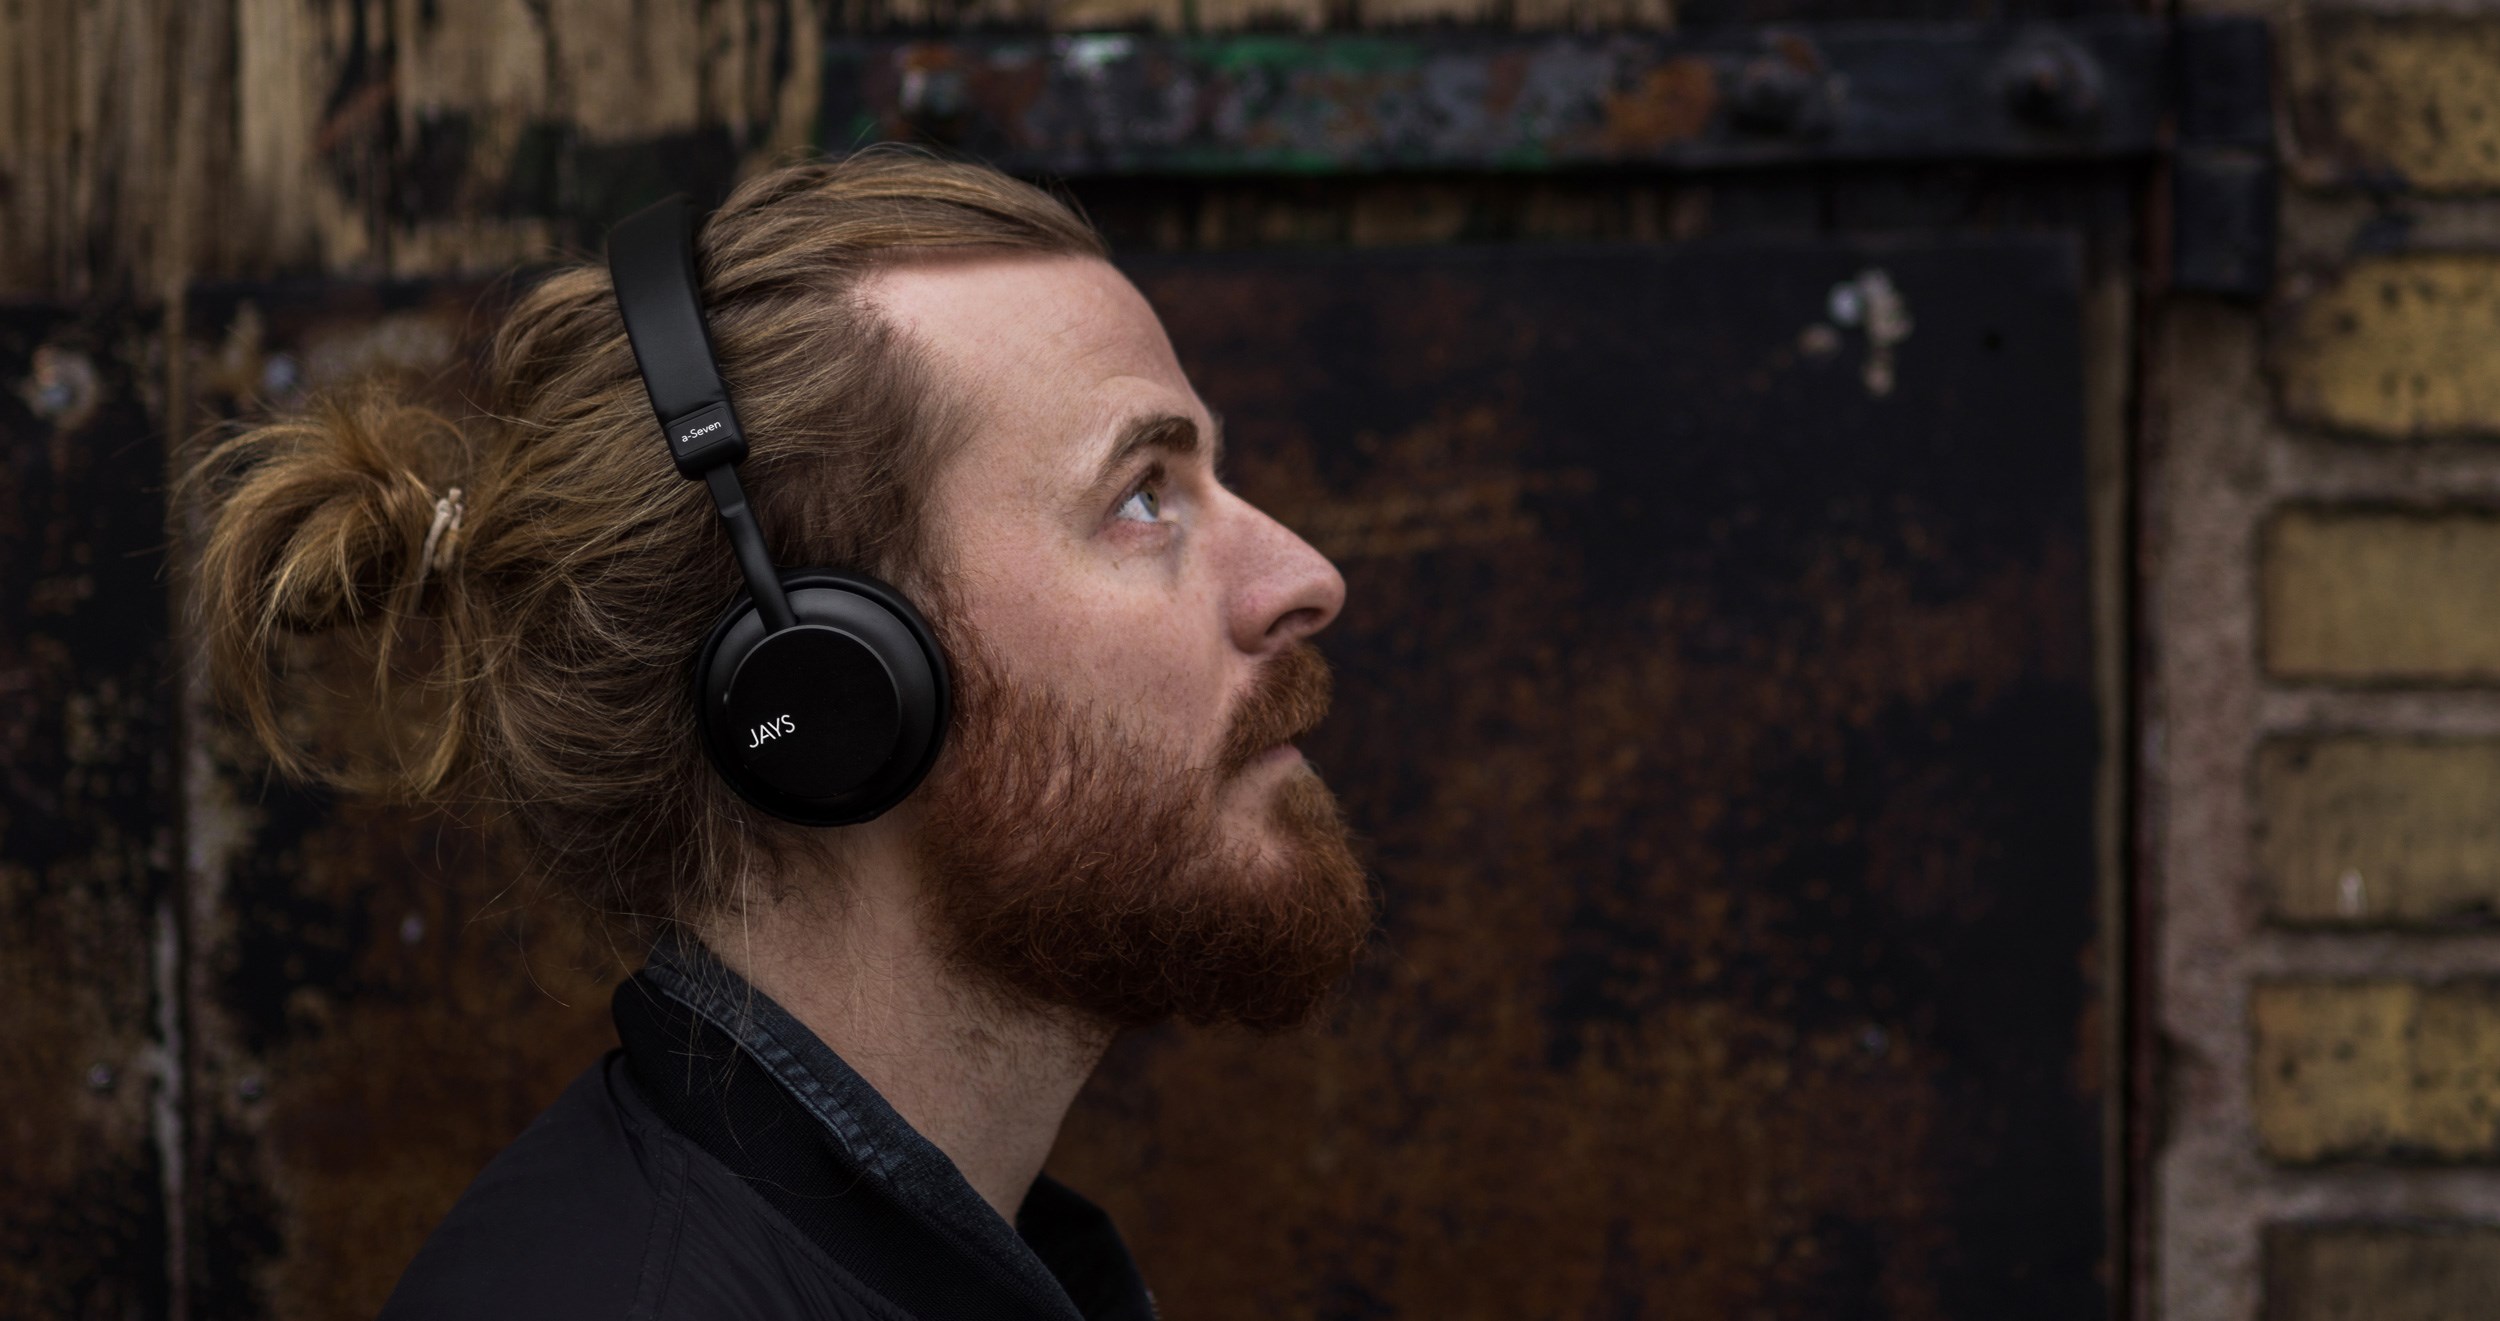 Jays Headphones väljer Motillo som ny e-handelspartner